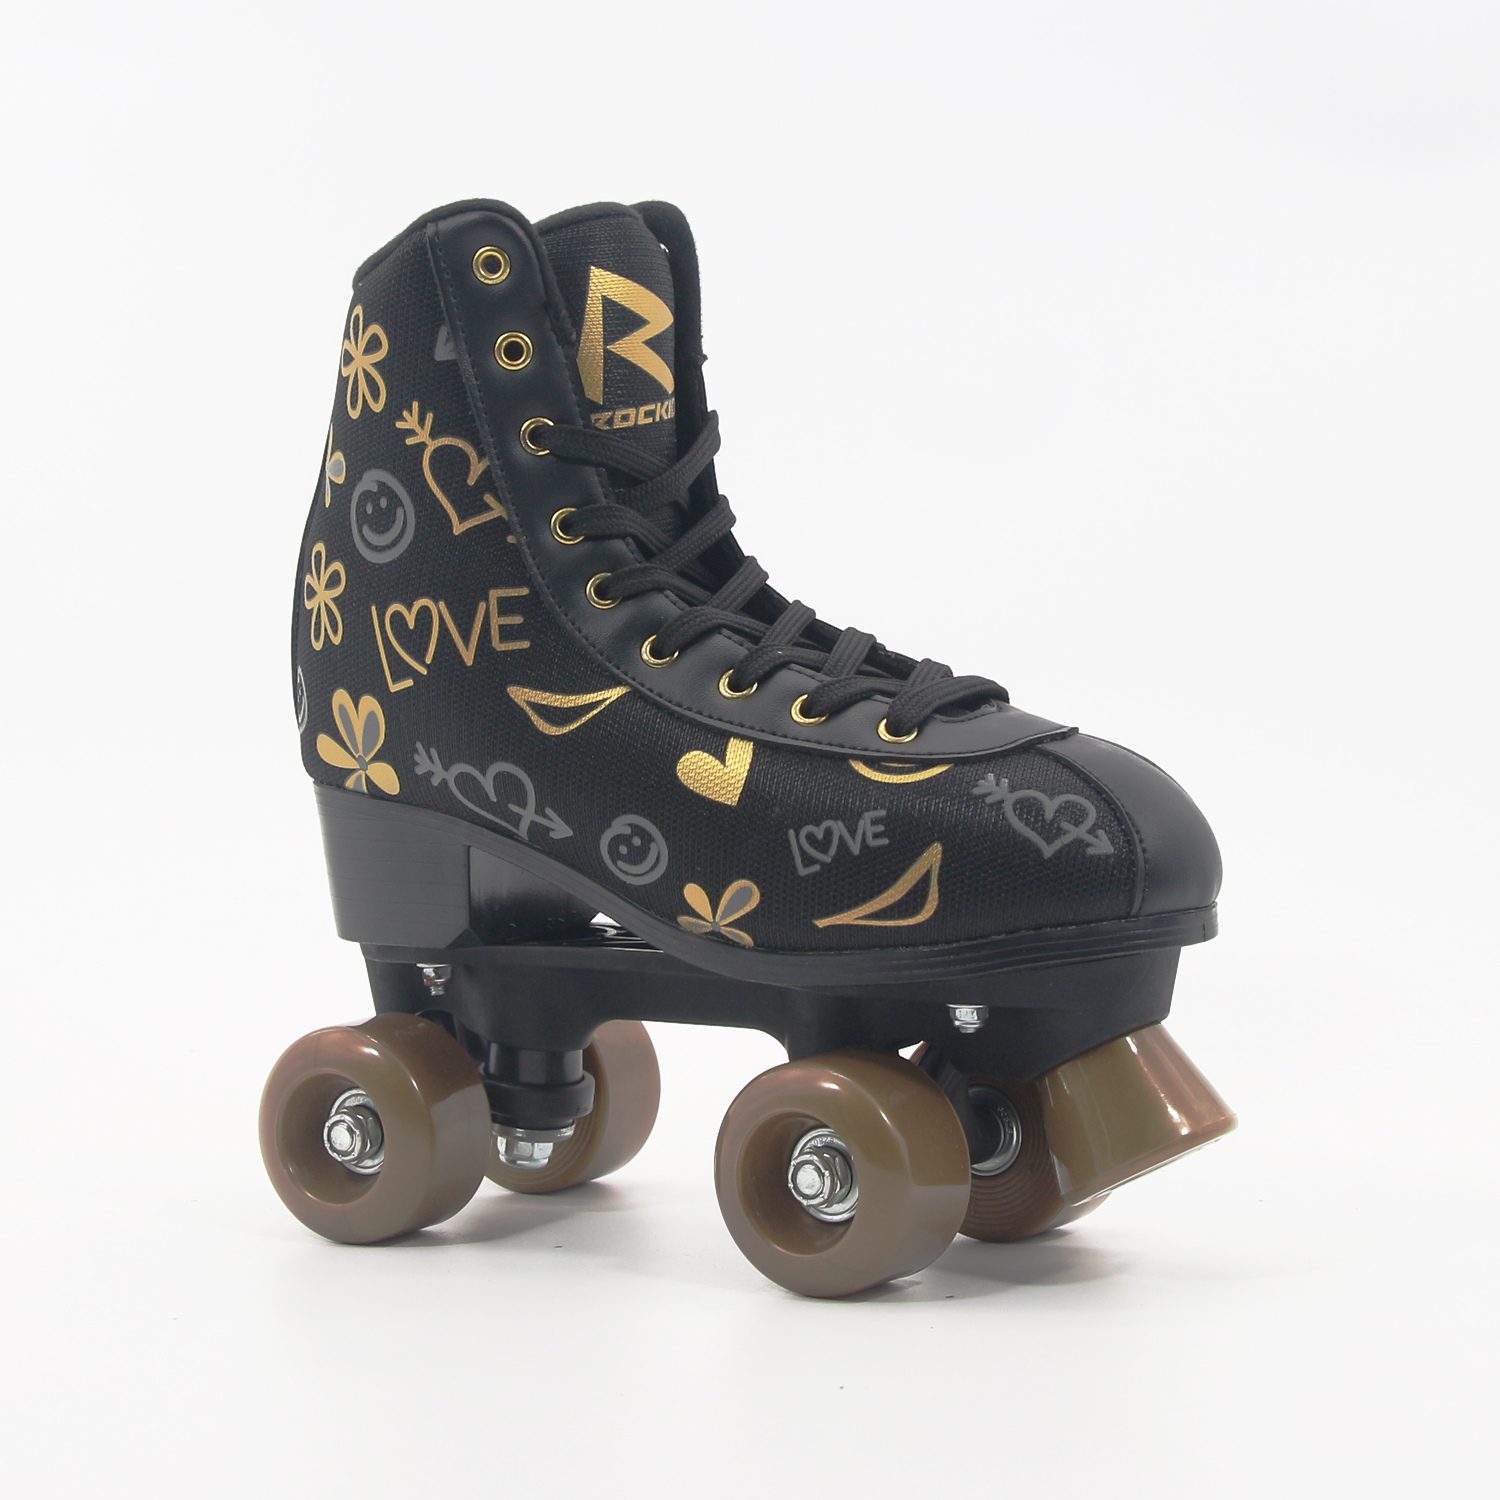 Kids Quad Roller Skate - Patines para niños en interiores, al aire libre - Rollerskates Hecho para niños - Gran patín para jóvenes para principiantes